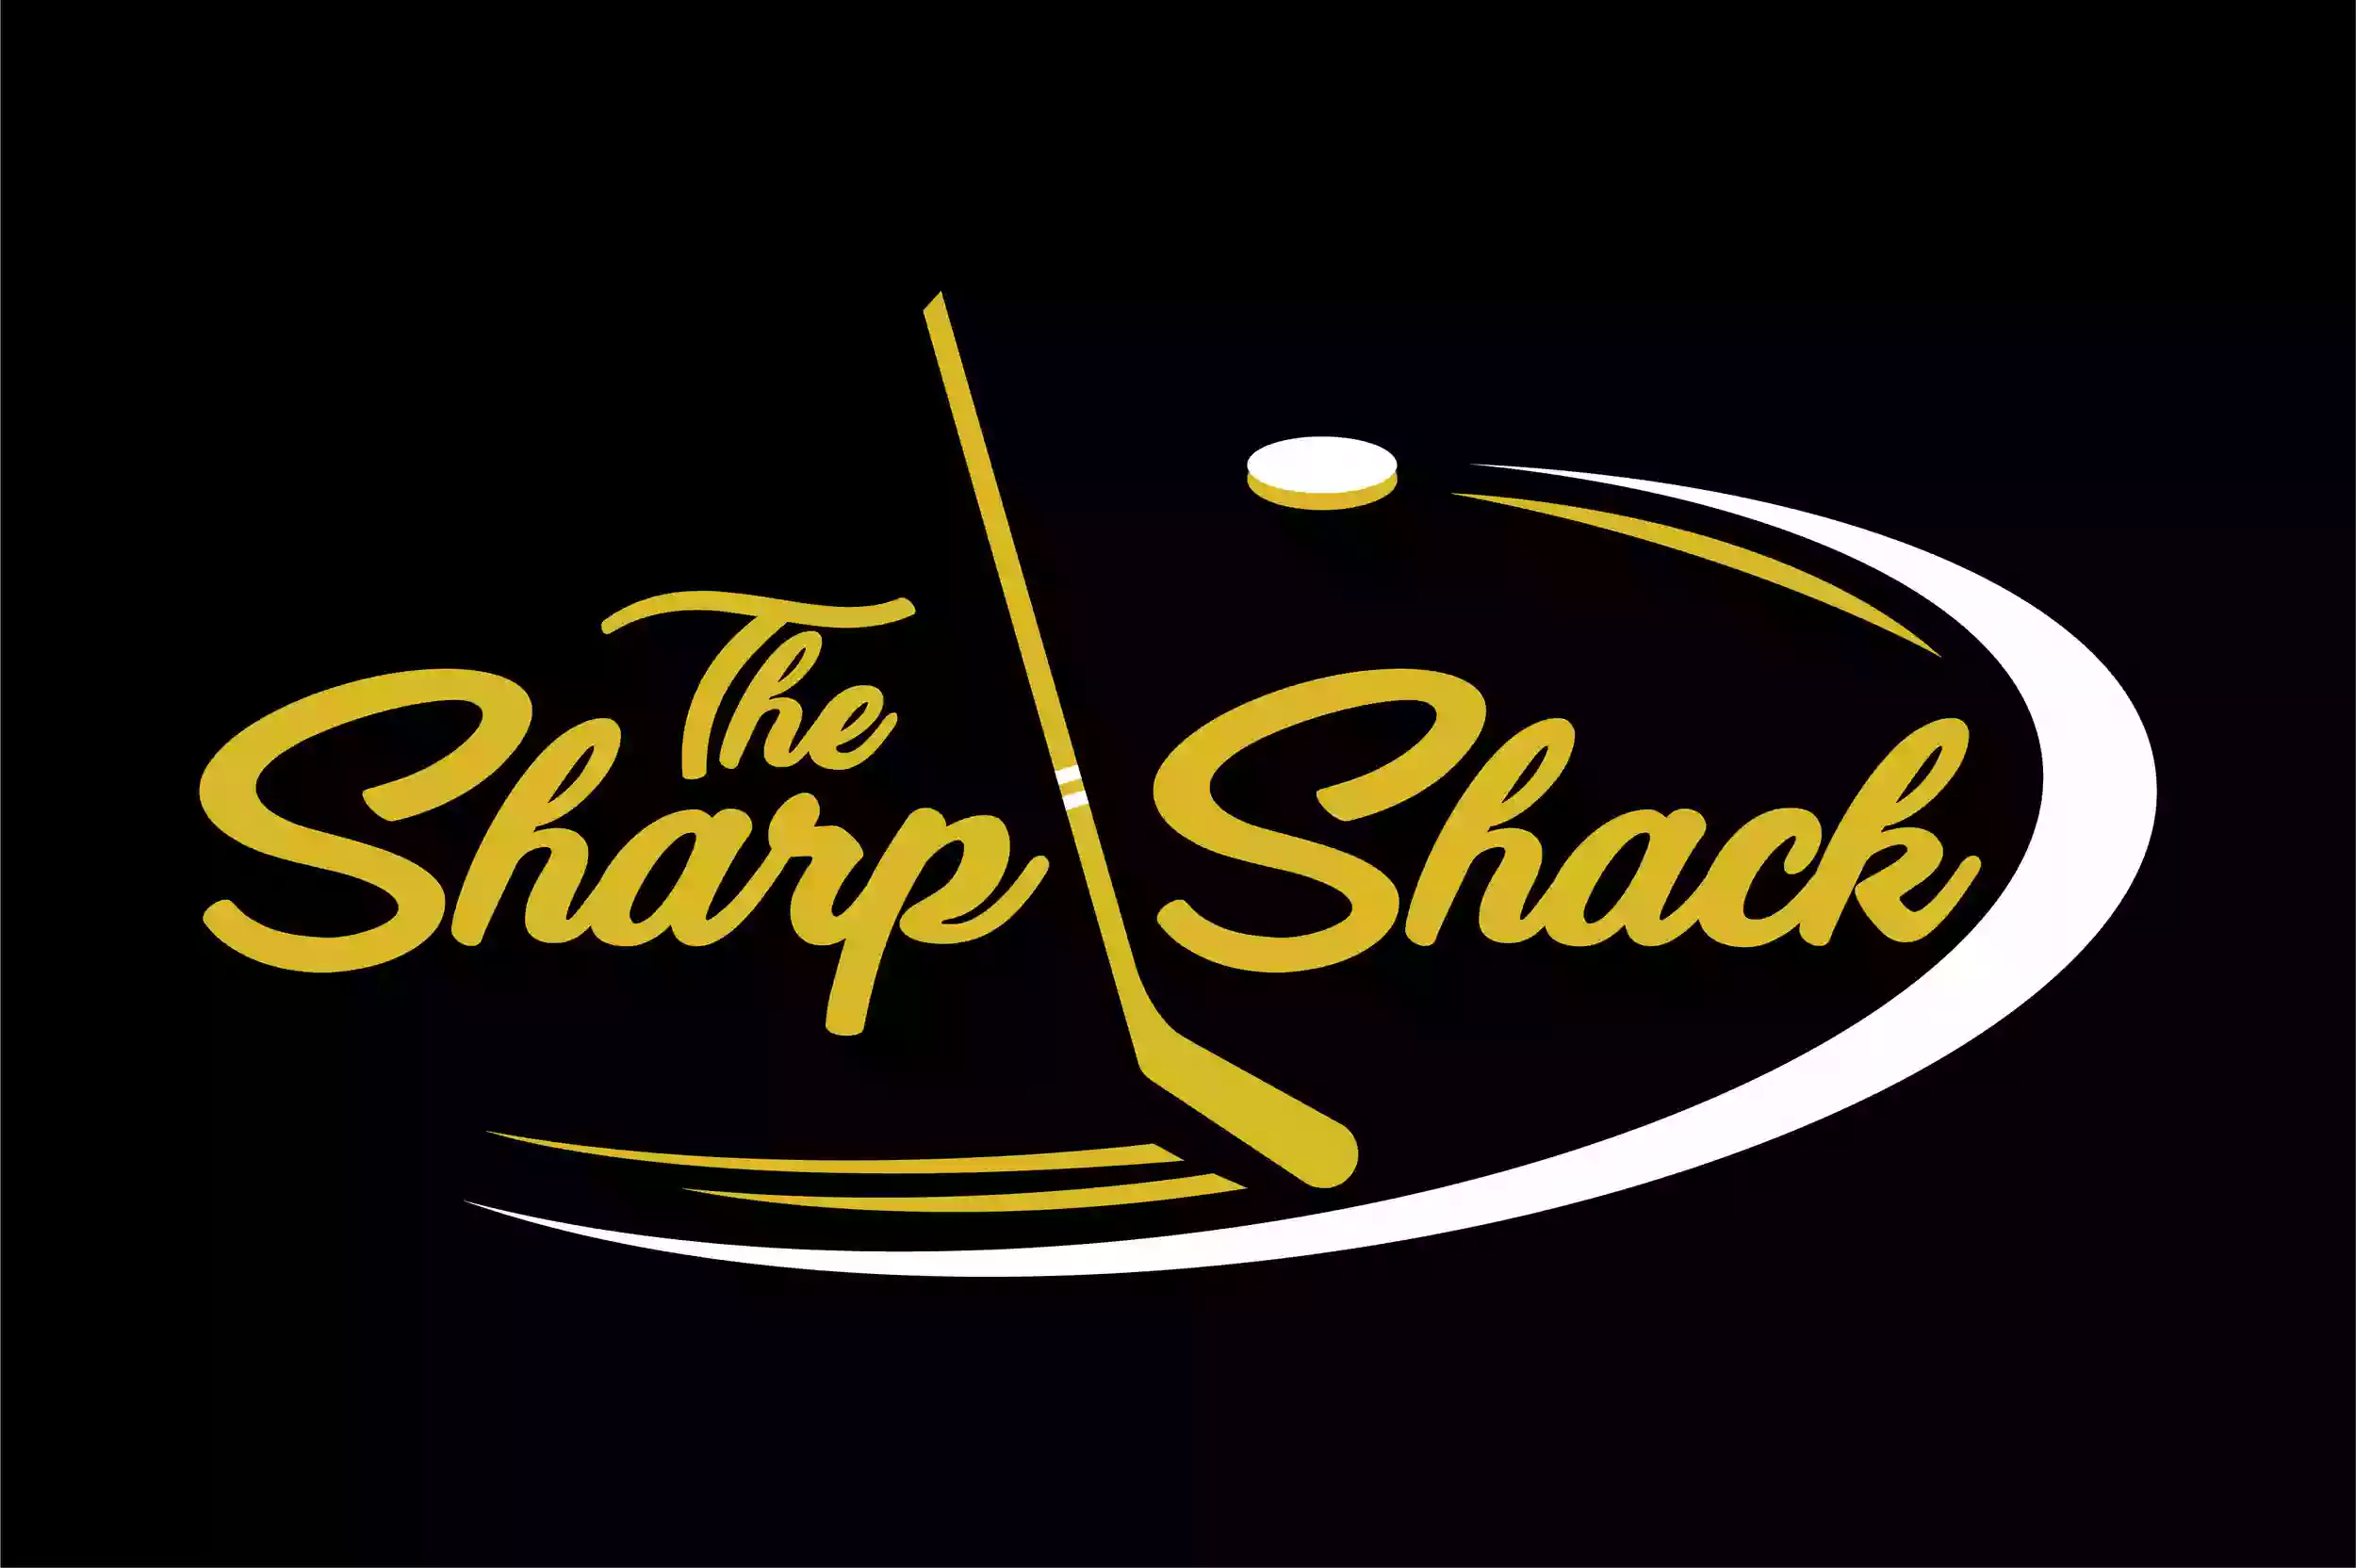 The Sharp Shack LLC